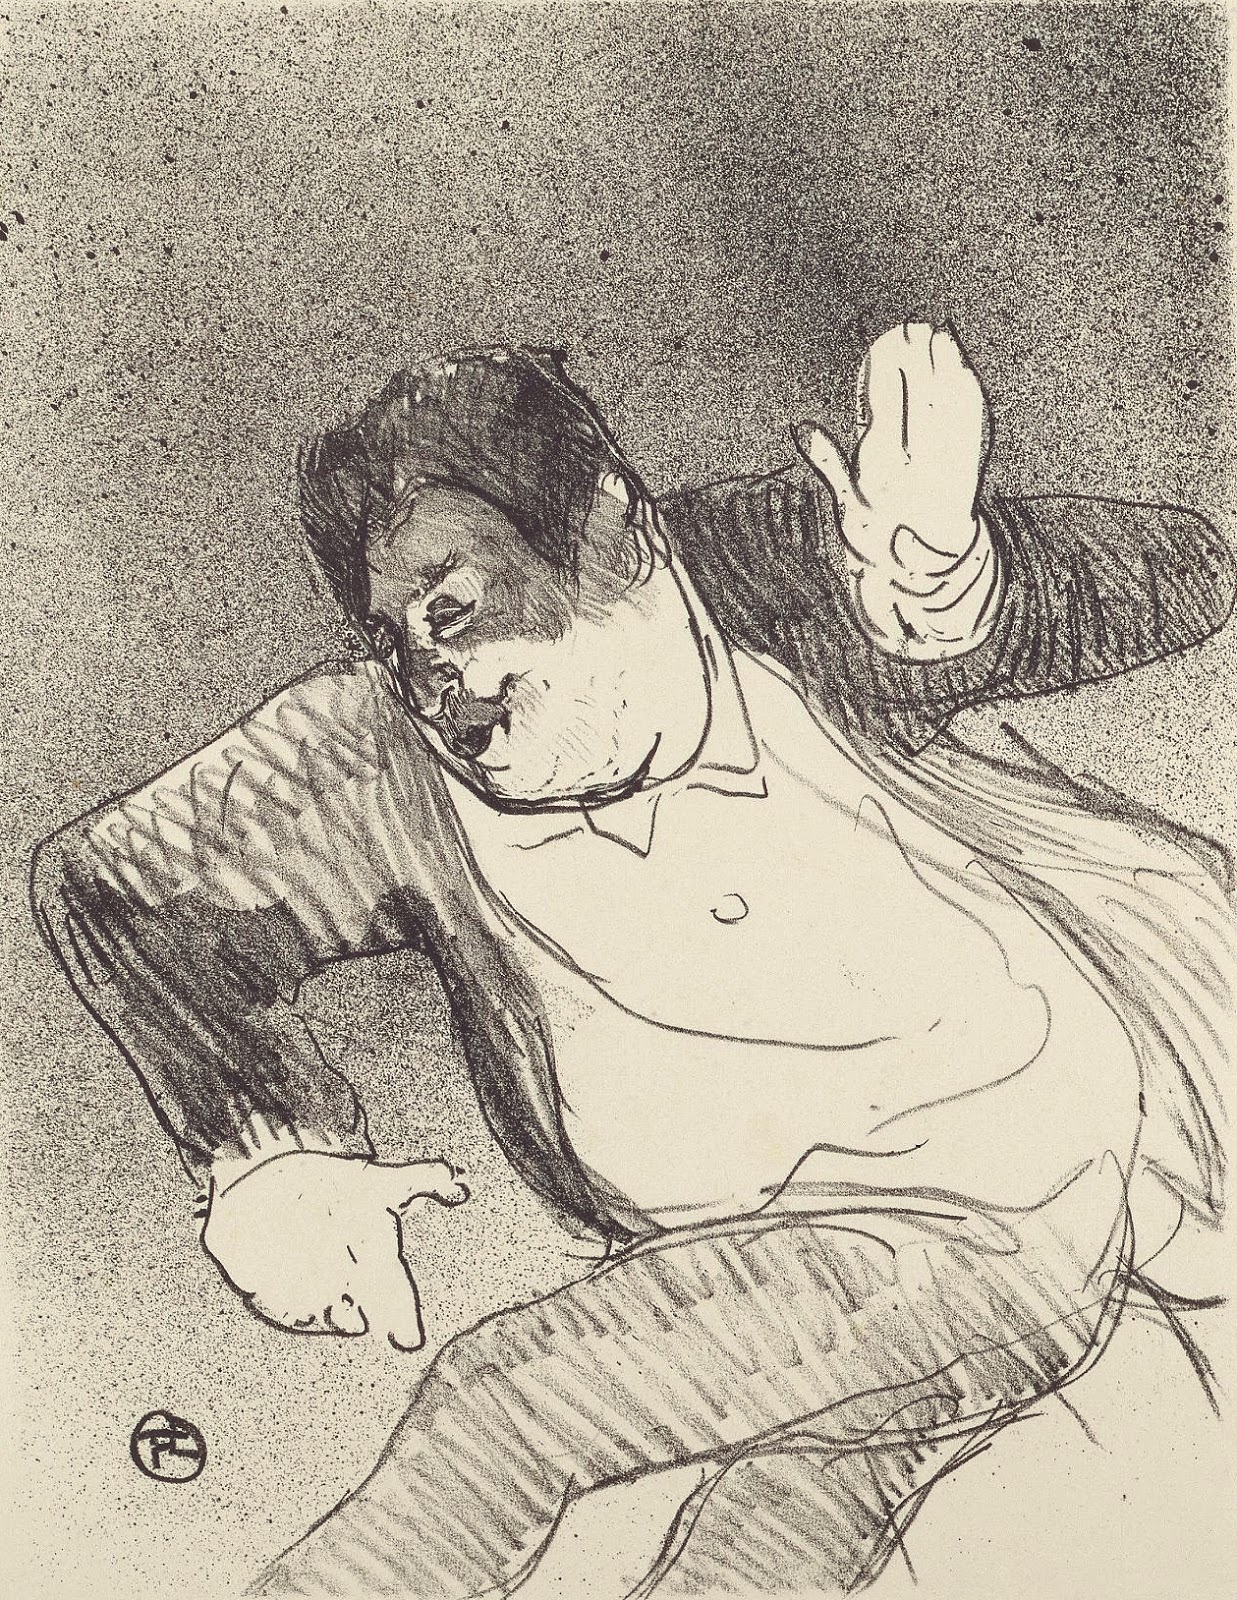 Henri+de+Toulouse+Lautrec-1864-1901 (34).jpg